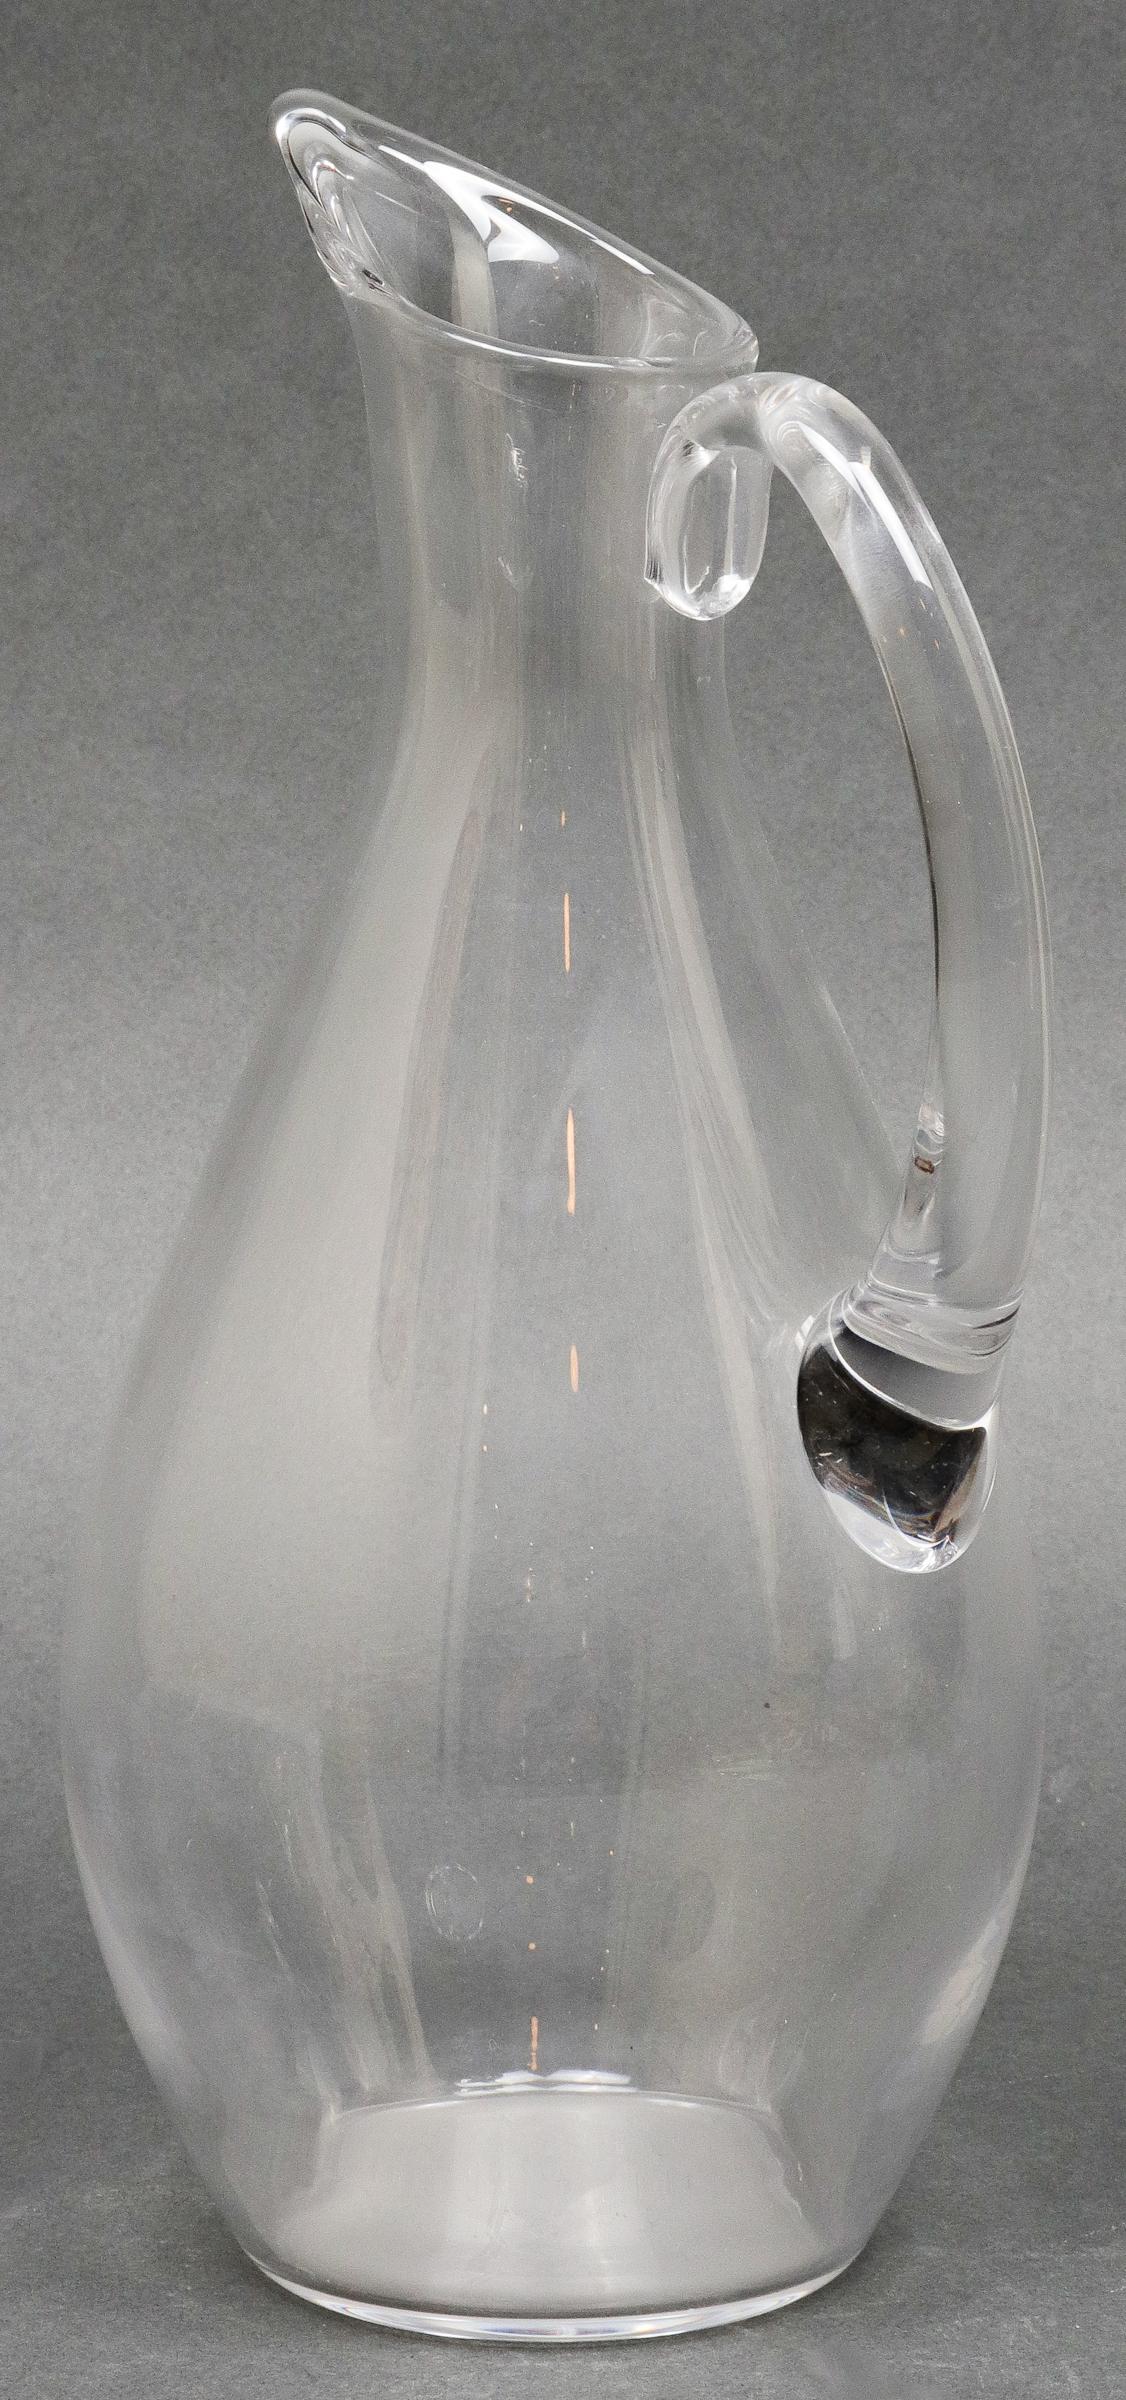 Baccarat modern colorless glass pitcher, acid-etched maker's mark underside. Measures: 11